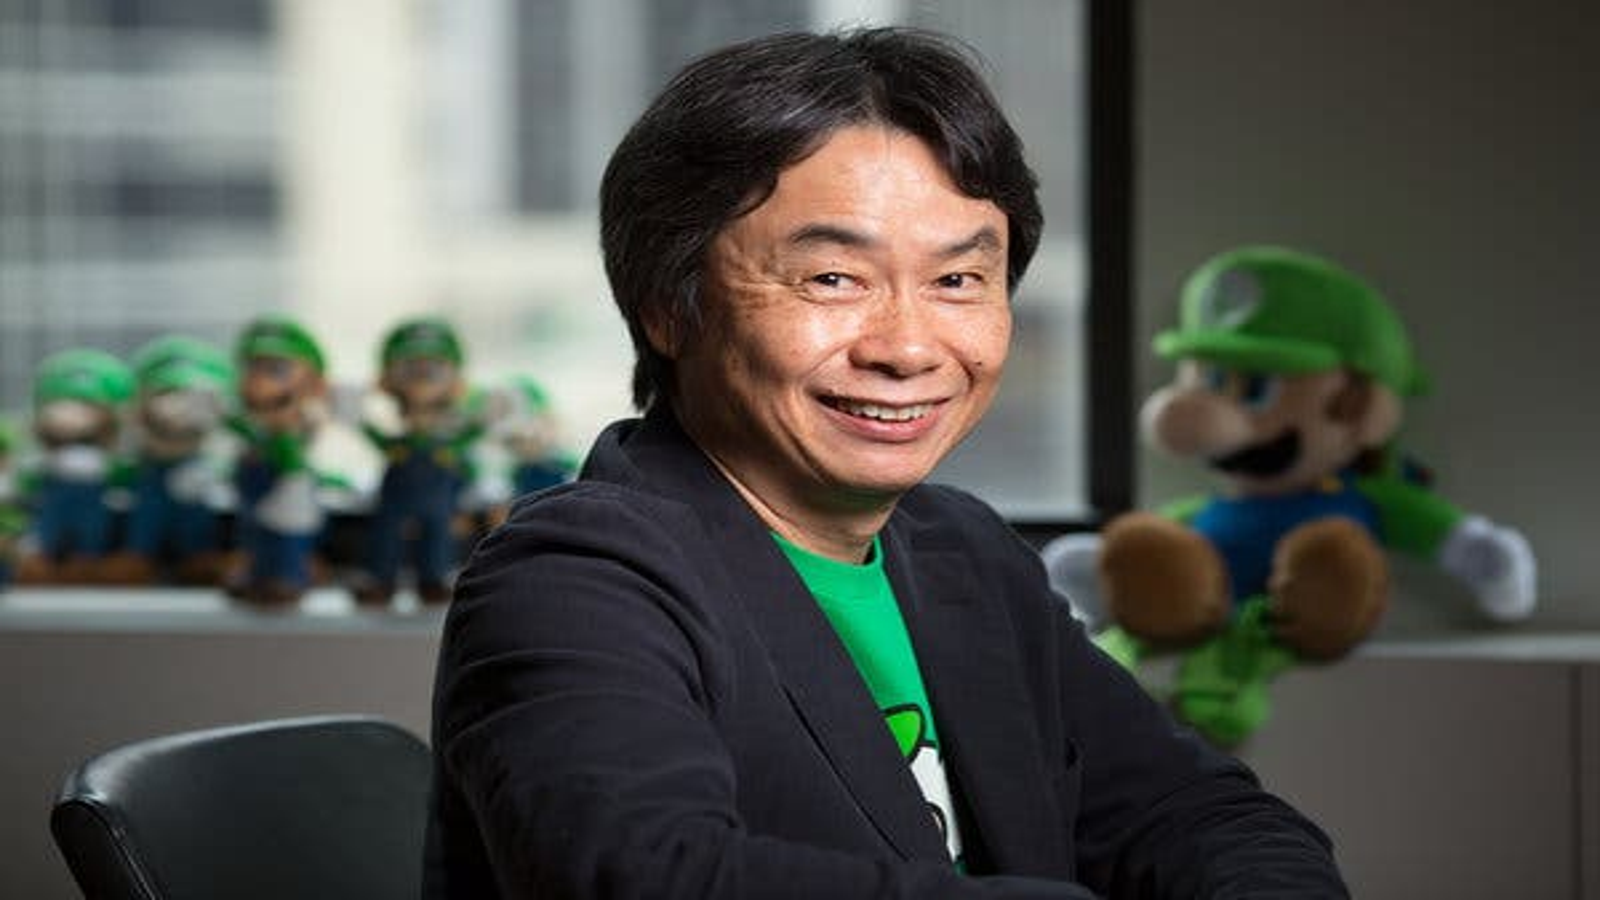 Shigeru Miyamoto, Fantendo - Game Ideas & More